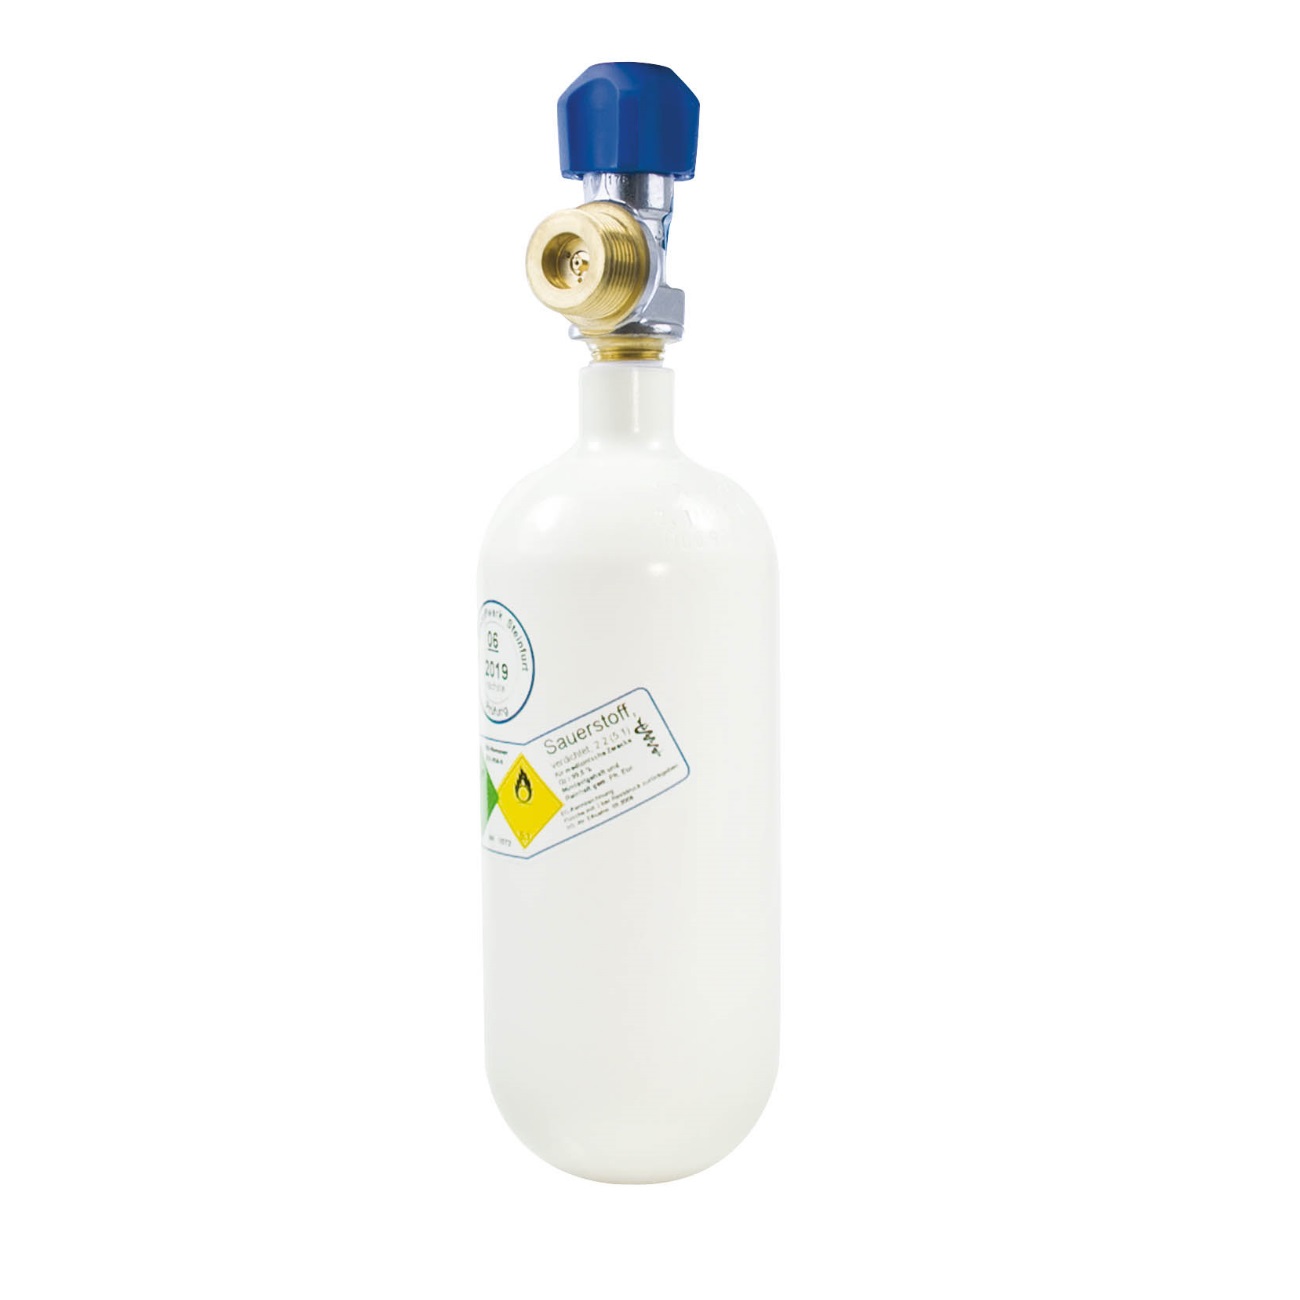 Sauerstoff-Flasche 0,8 Liter | Leichtstahl | gefüllt mit 200 bar medizinischem Sauerstoff